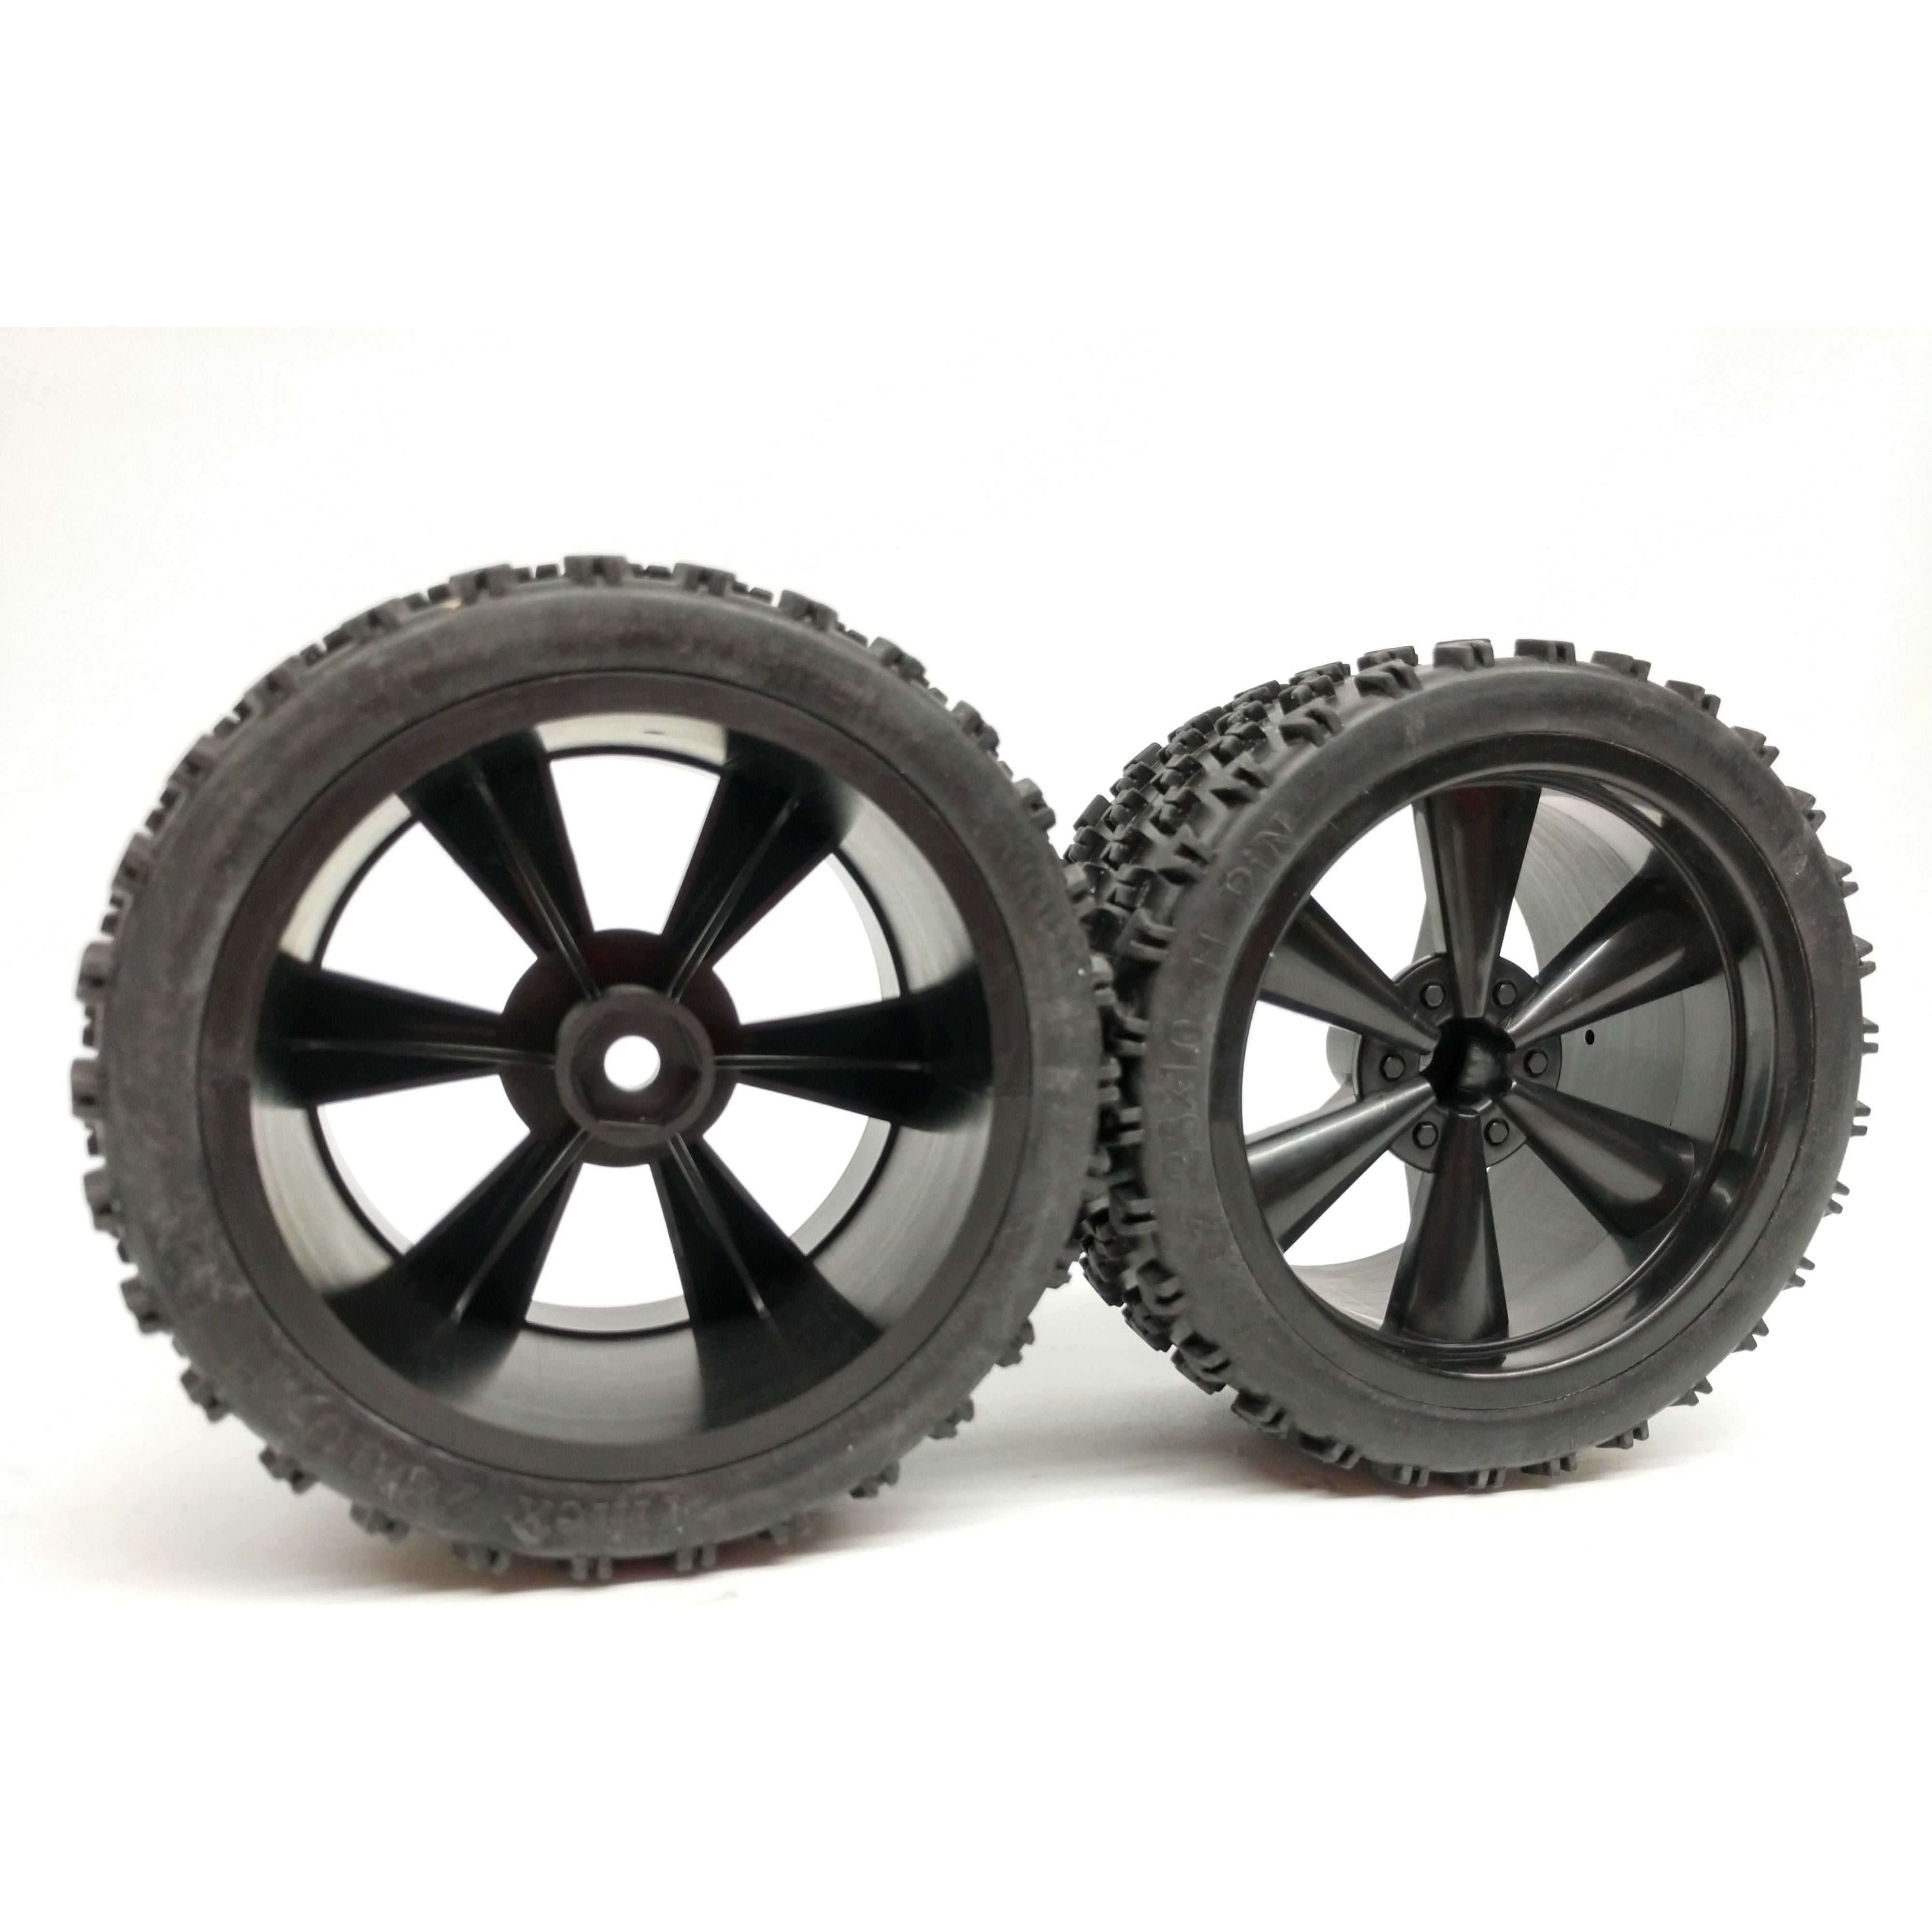 IMEX 2.8 H-Pin Tires & Hawk Rims (1 Pair)